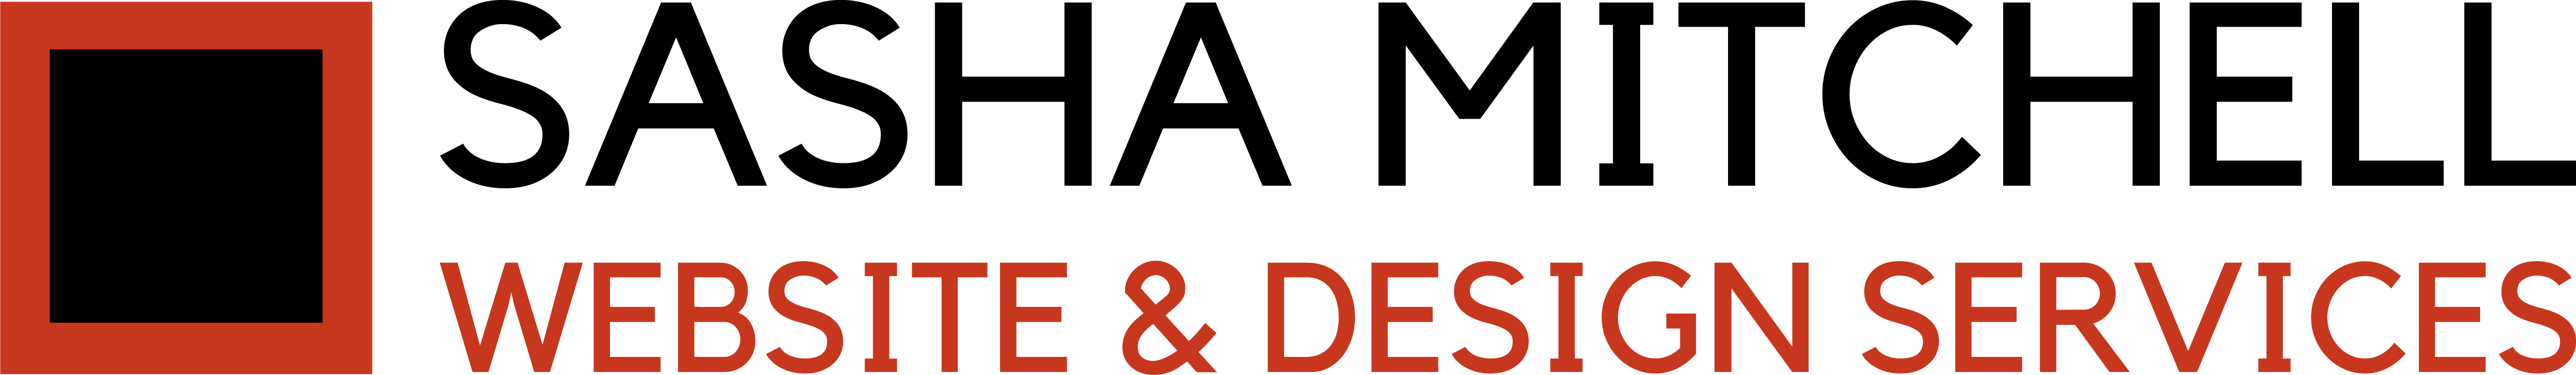 Sasha Mitchell Website & Design Services Logo